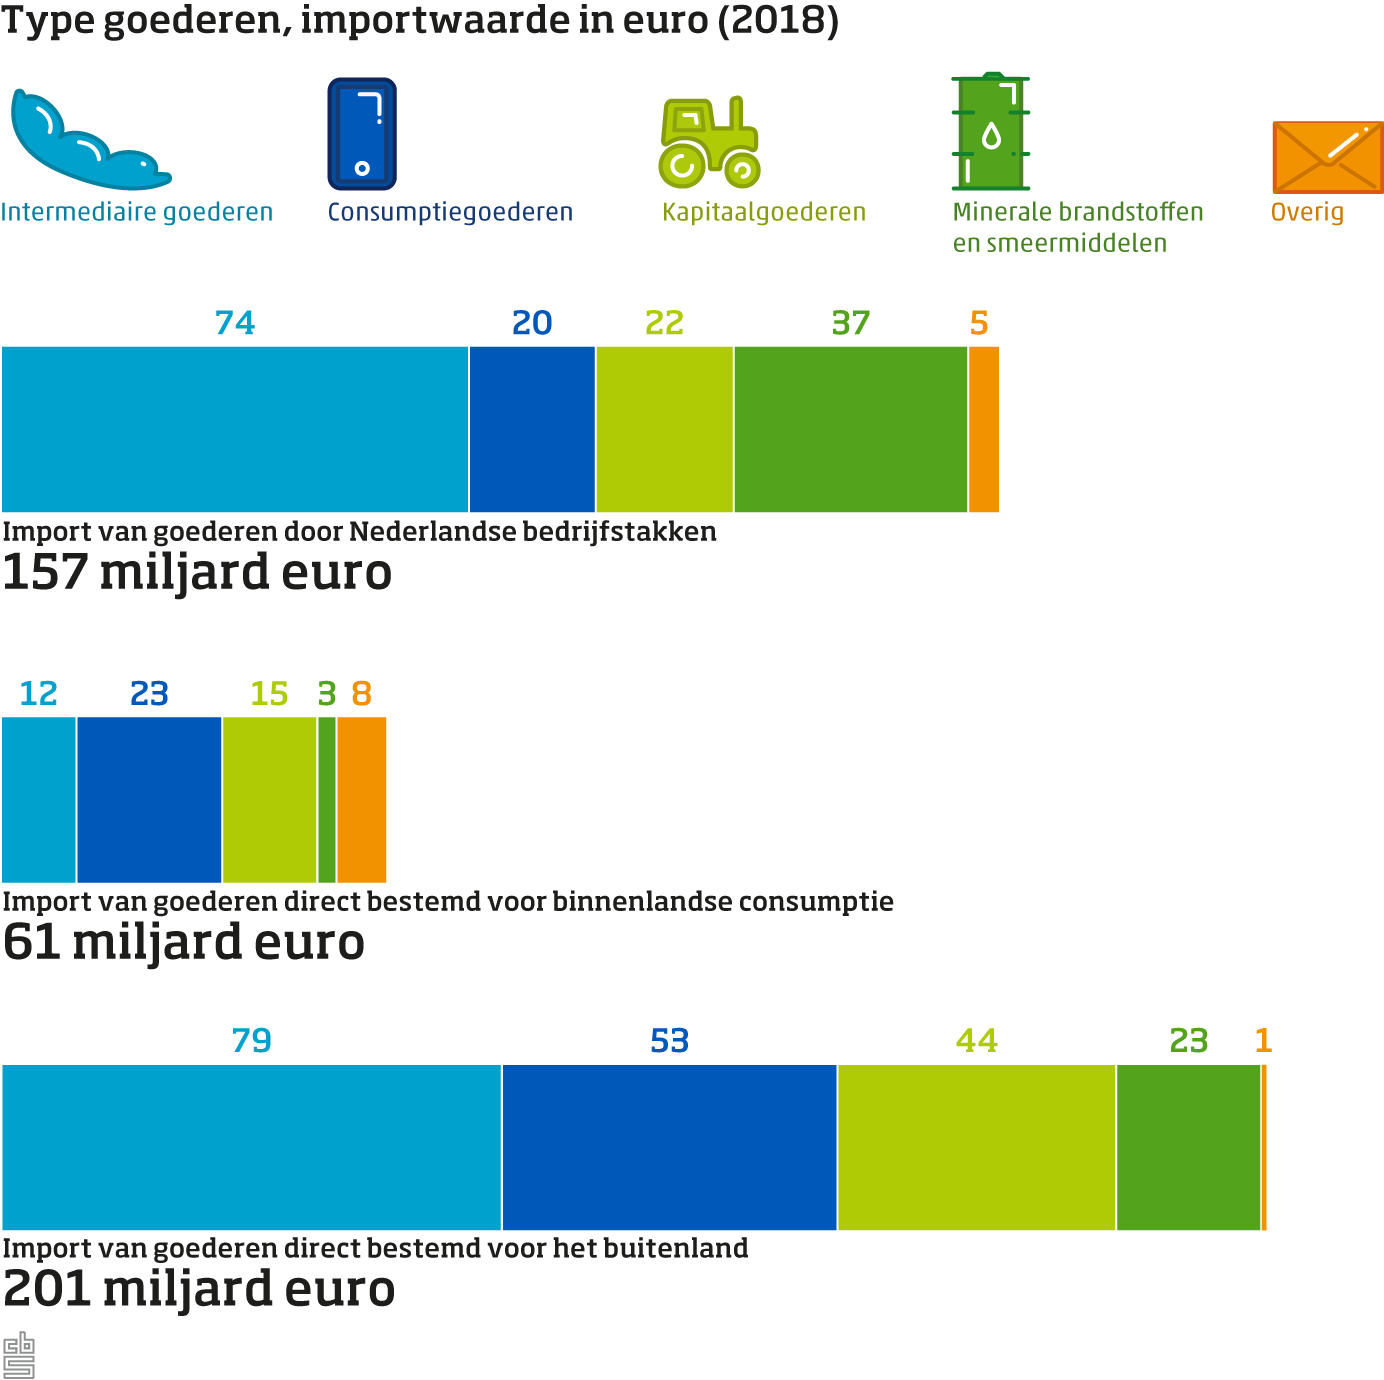 Type goederen bestemd voor Nederland, importwaarde in euro, 2018